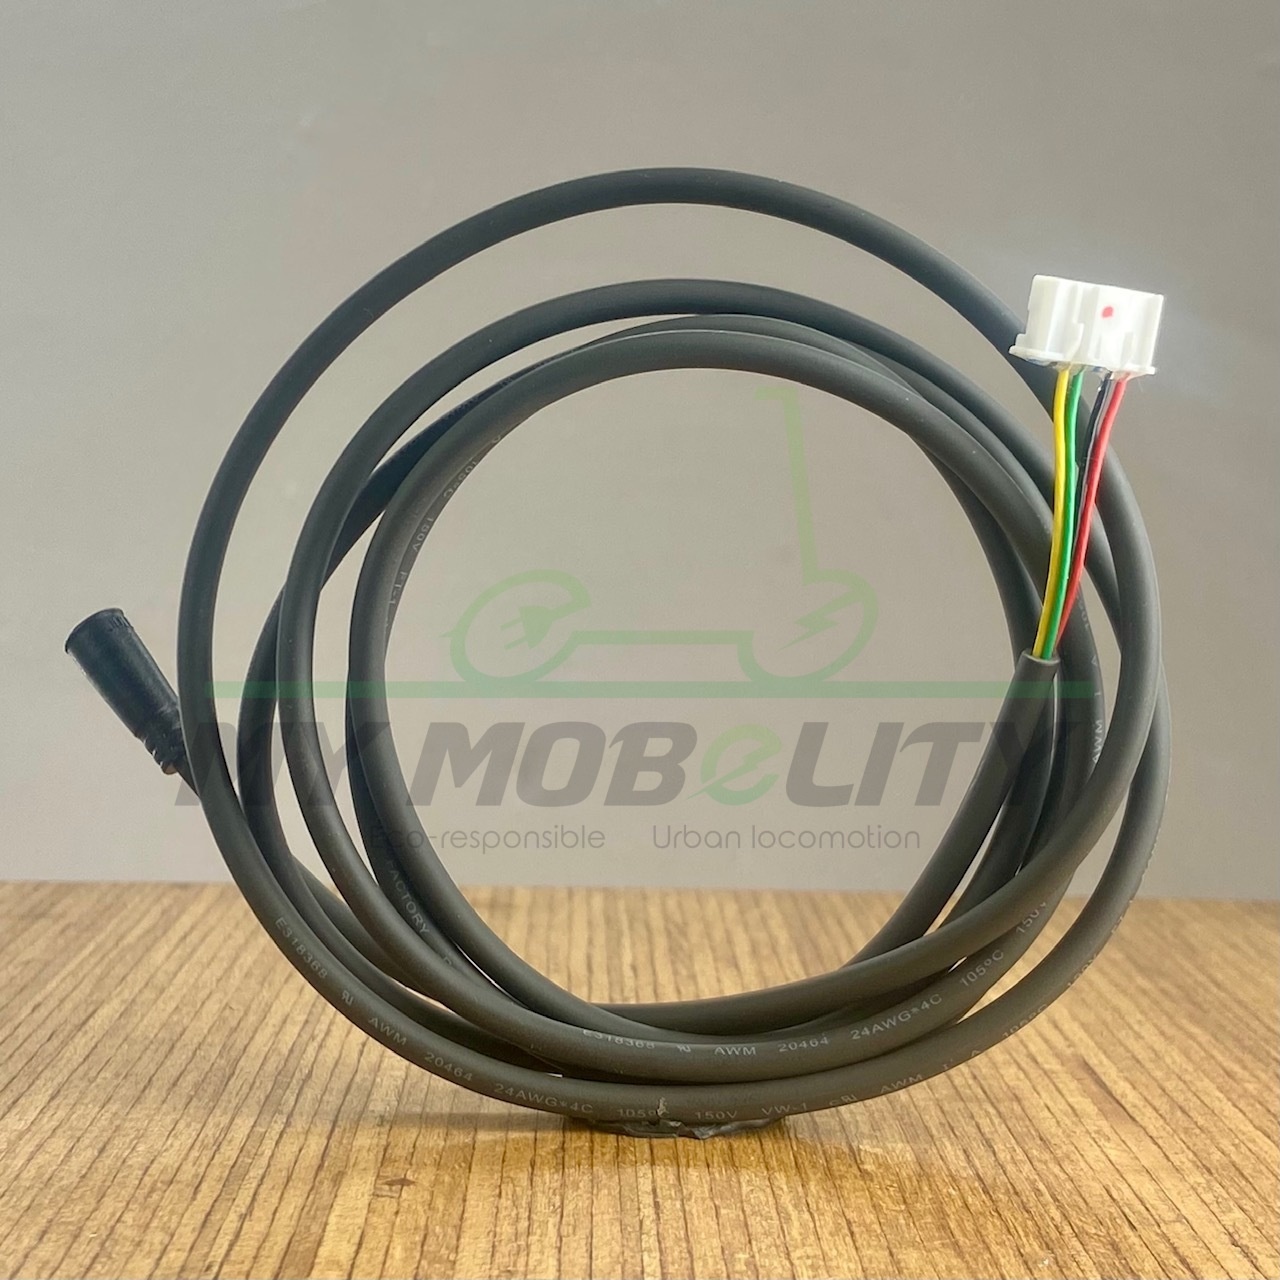 Câble d'alimentation / câble de Ninebot Max G30 (prise EU)